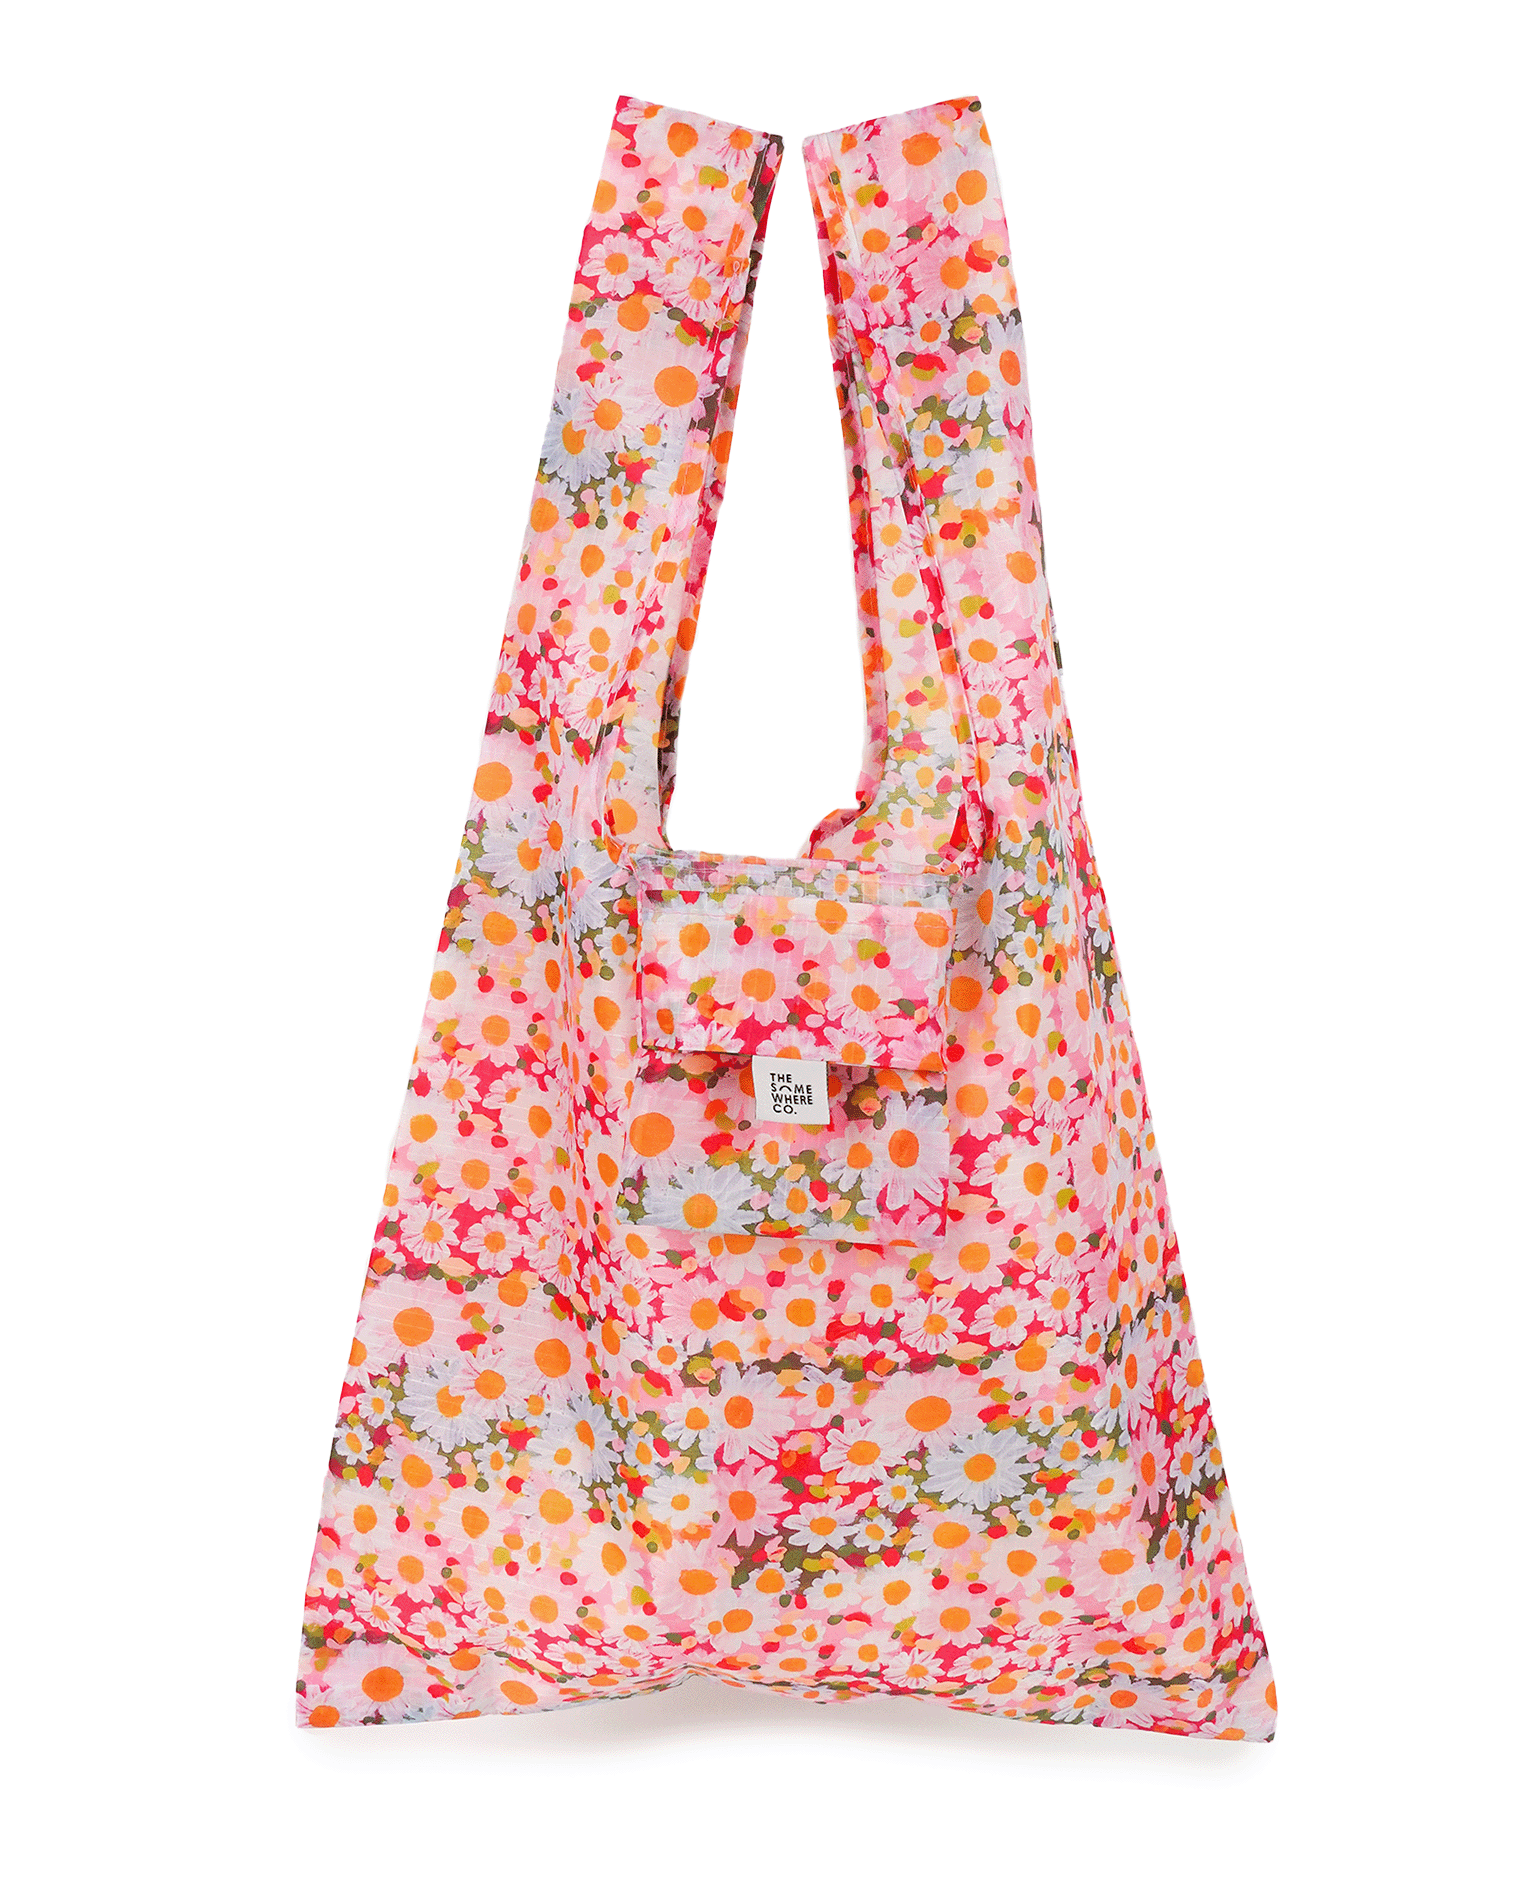 Daisy Days Reusable Shopping Bag